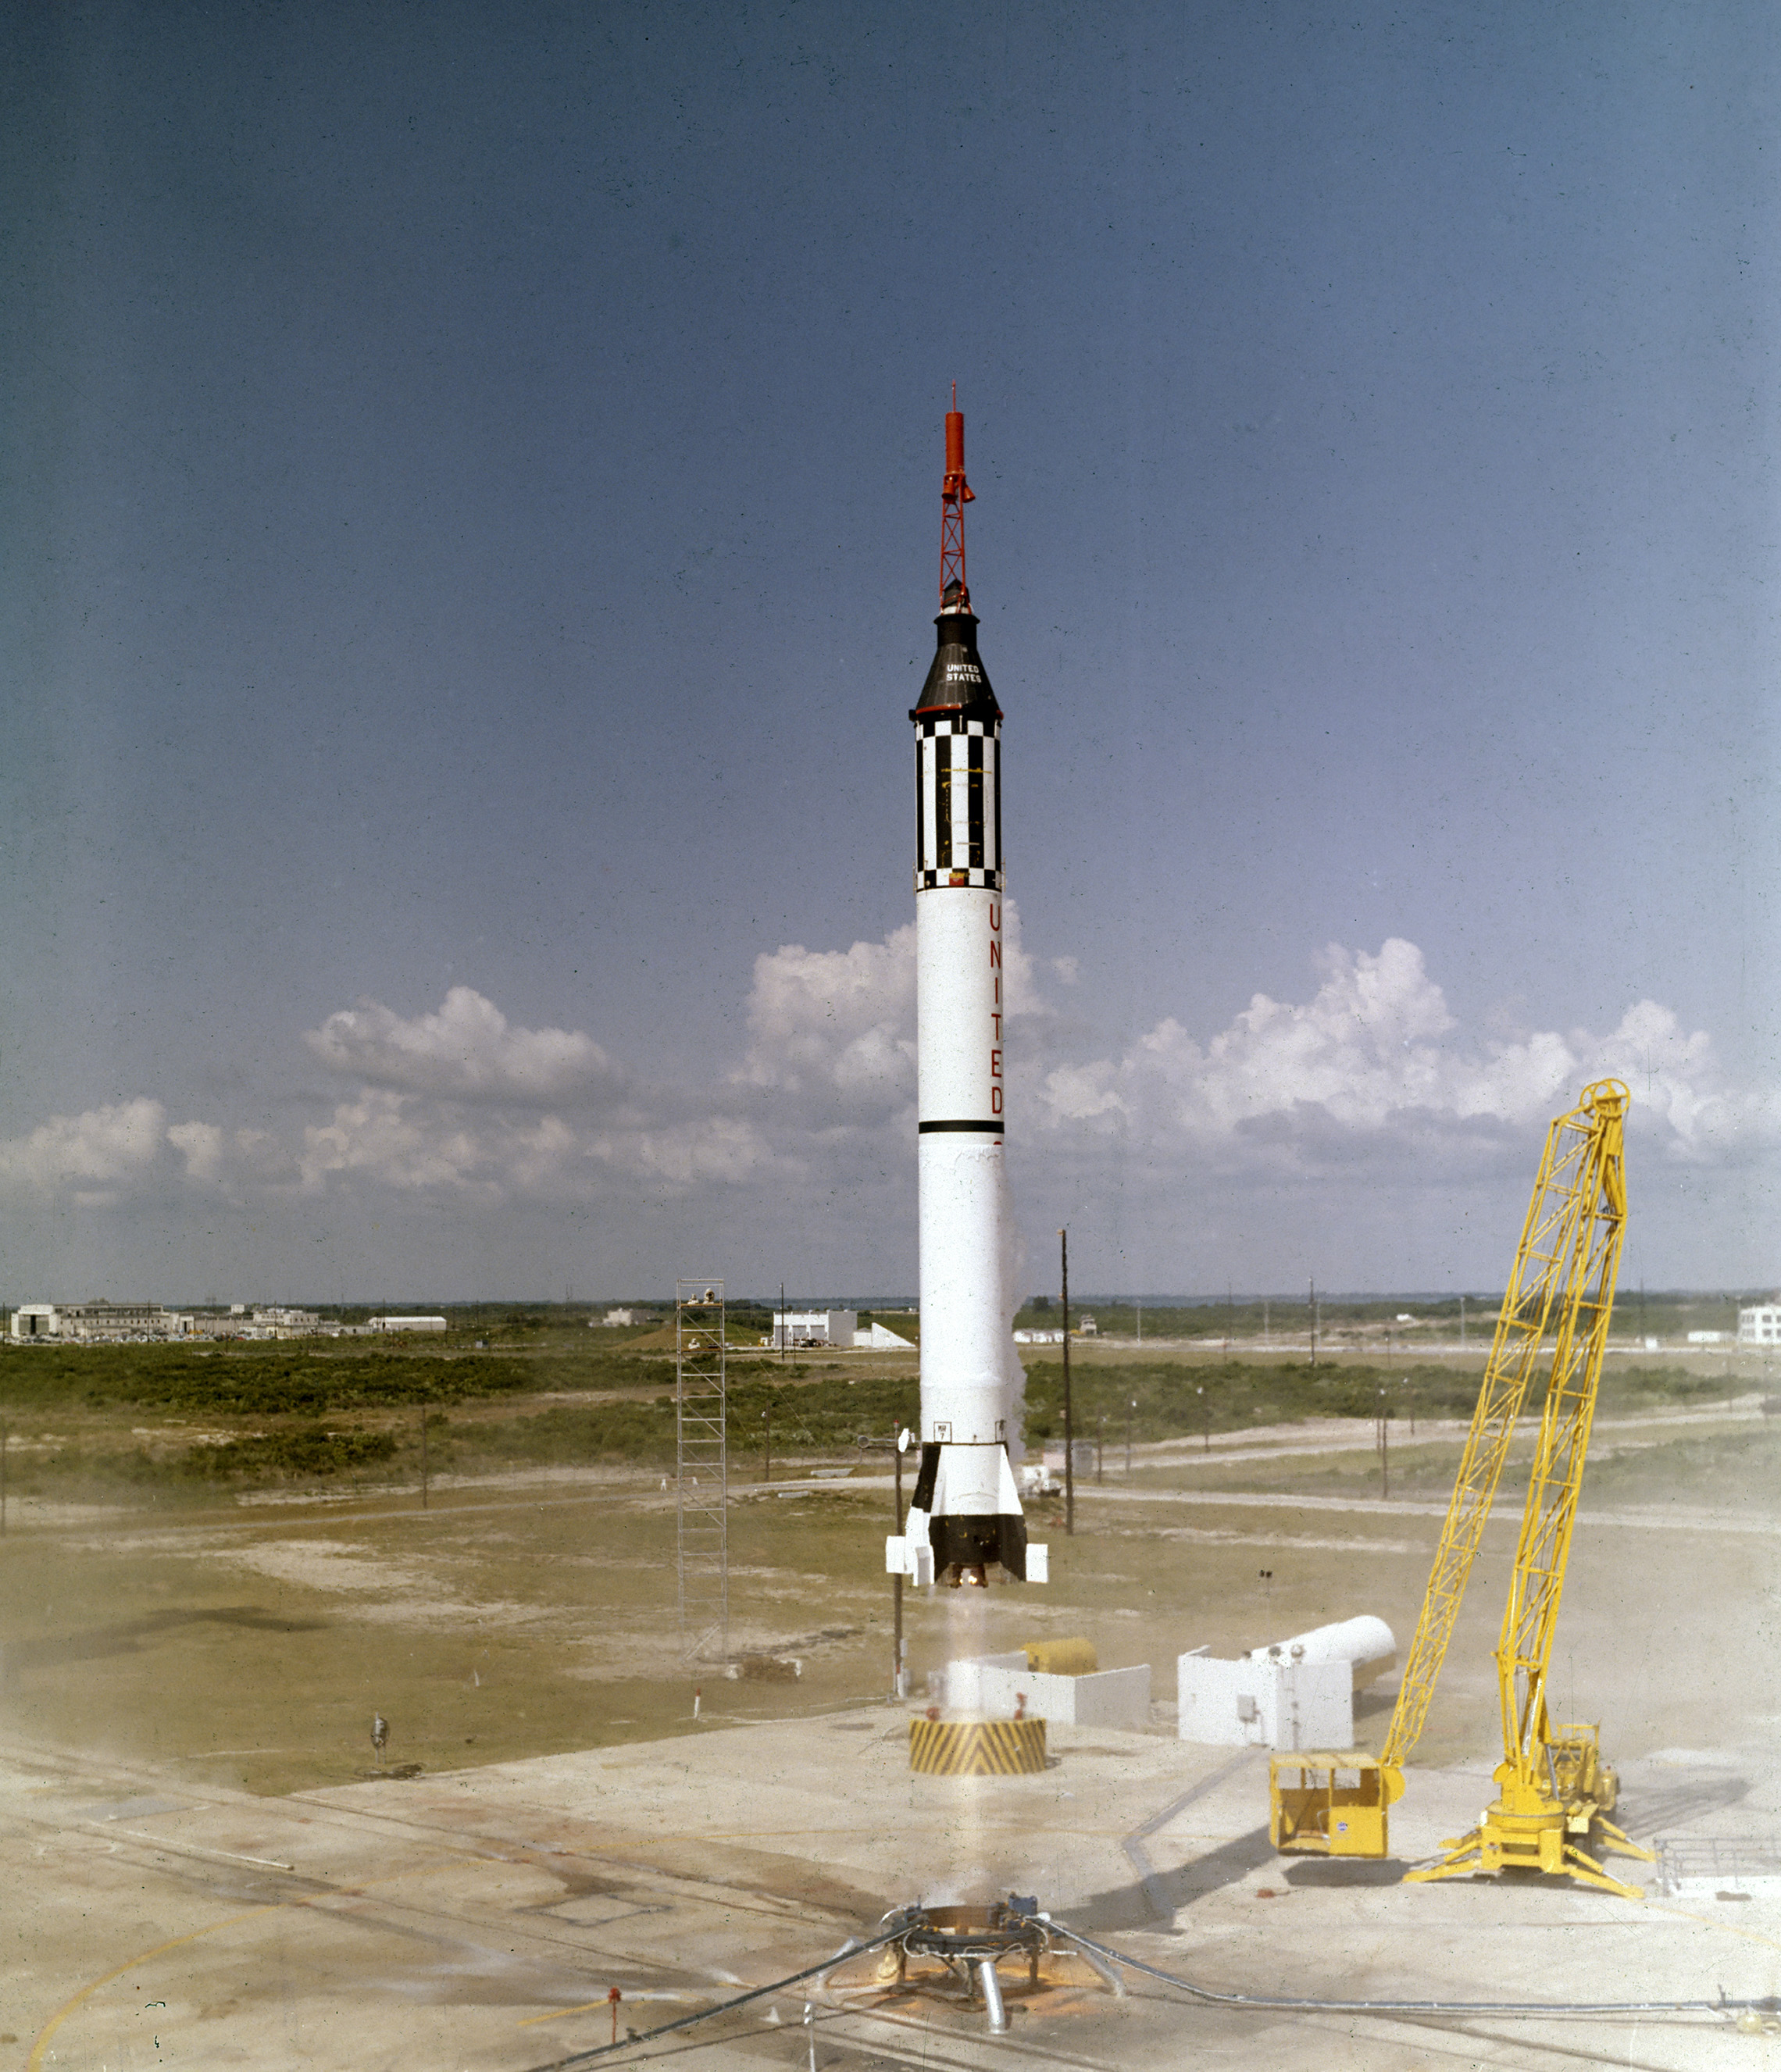 astronautul Alan B. Shepard, Jr.se ridică în nava spațială Freedom 7 Mercury pe 5 mai 1961. Acest al treilea zbor al vehiculului Mercury-Redstone (MR-3), dezvoltat de Dr.Wernher von Braun și echipa de rachete din Huntsille, Alabama, a fost prima misiune spațială cu echipaj pentru Statele Unite. În timpul zborului suborbital de 15 minute, Shepard a atins o altitudine de 115 mile și a parcurs 302 mile în jos. (NASA)